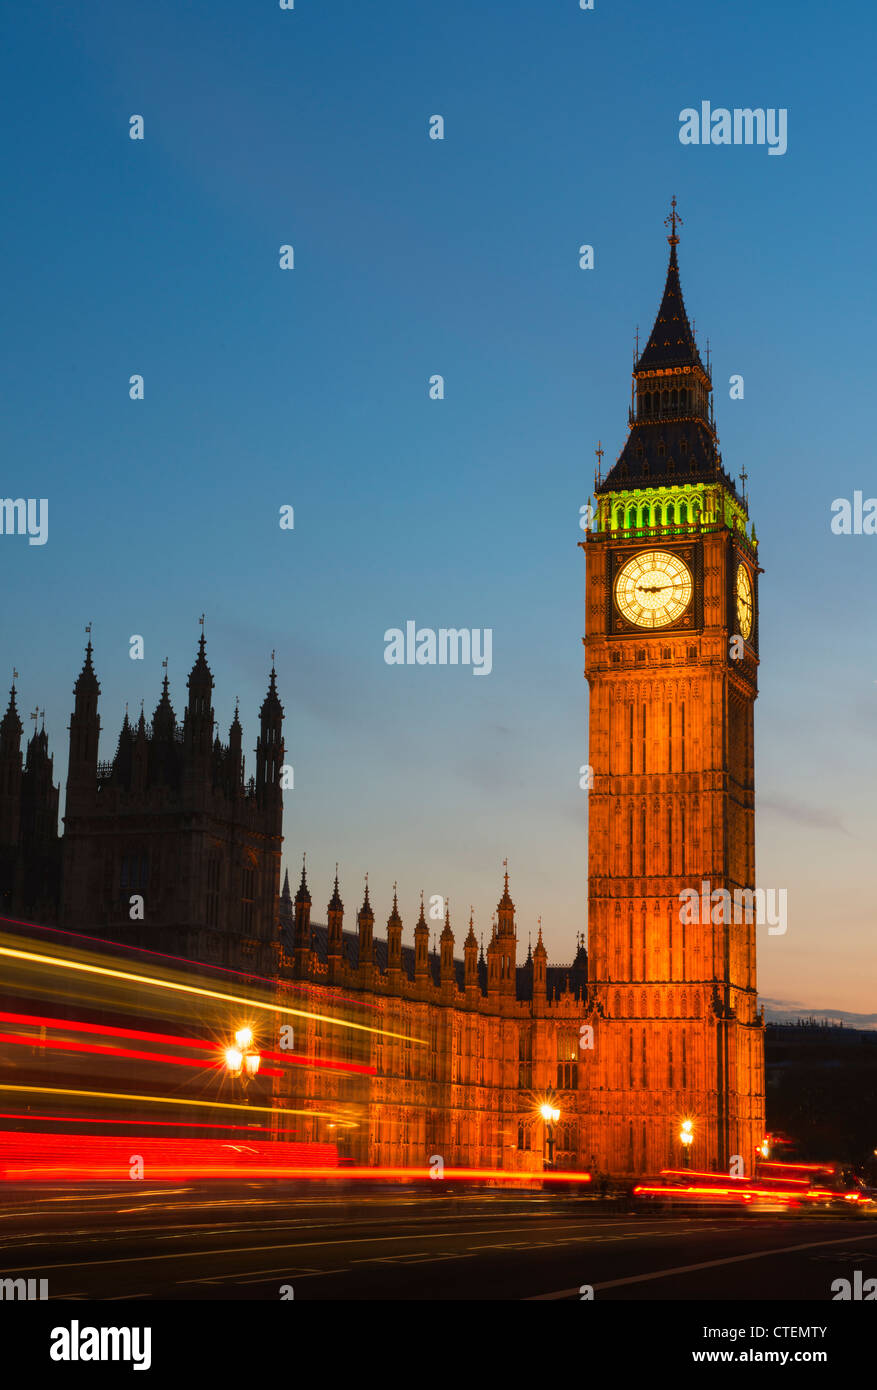 Royaume-uni, Angleterre, Londres, Big Ben et le Parlement au crépuscule Banque D'Images